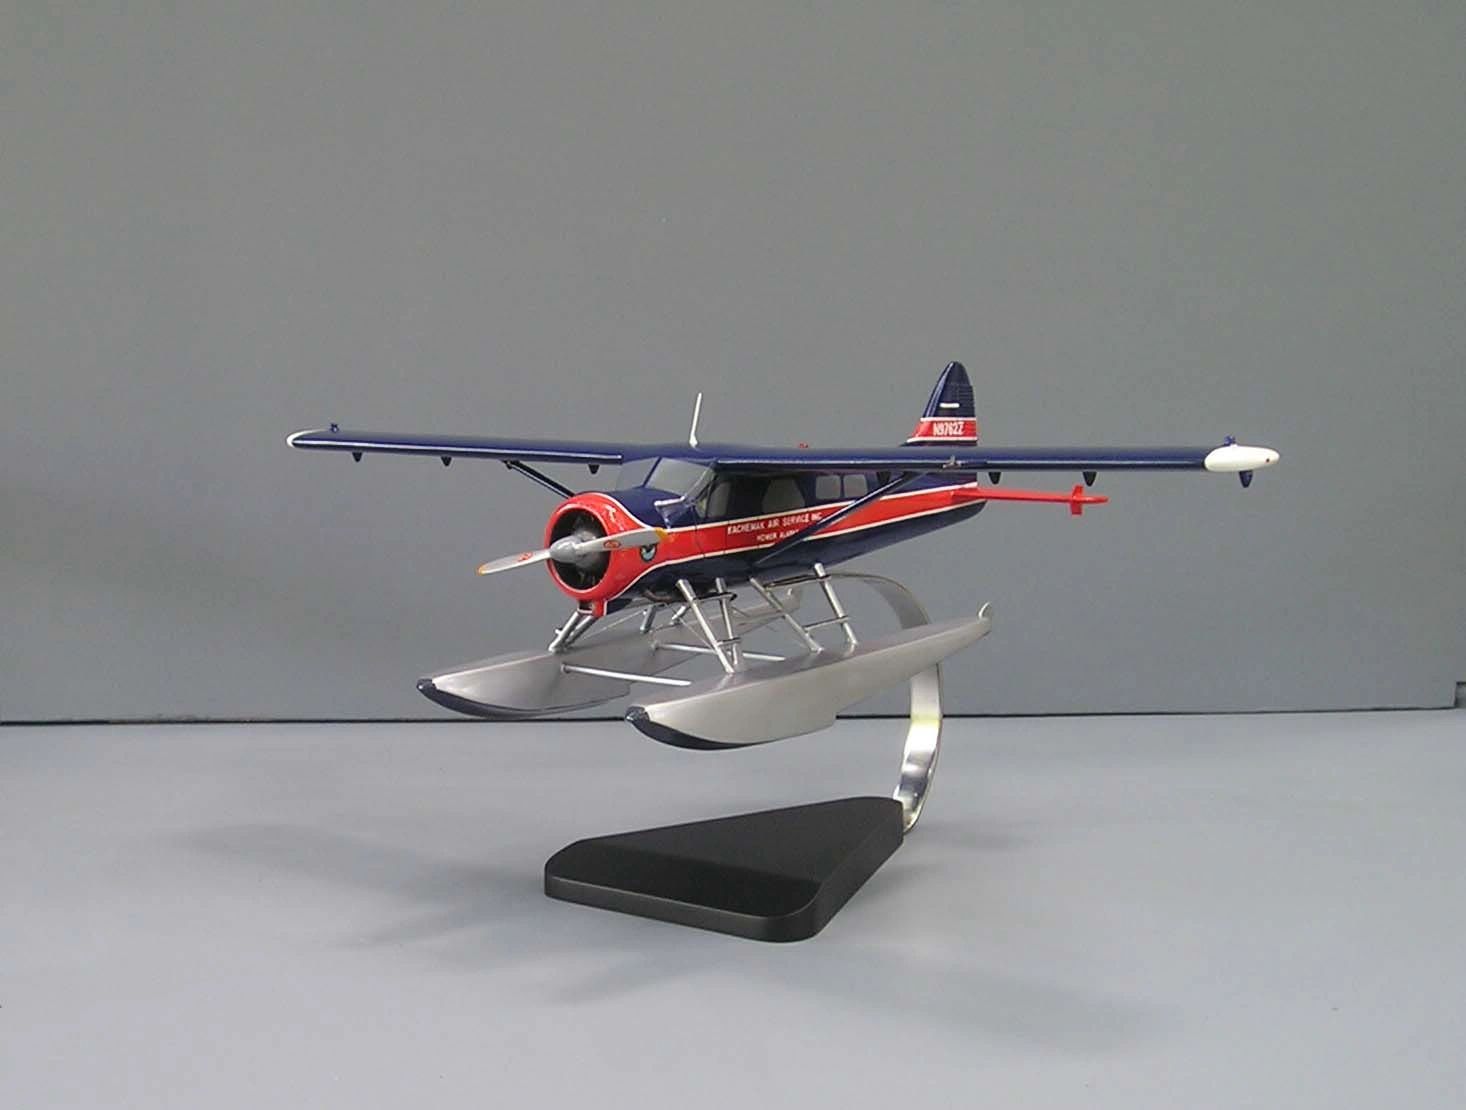 DHC-2 Beaver custom model